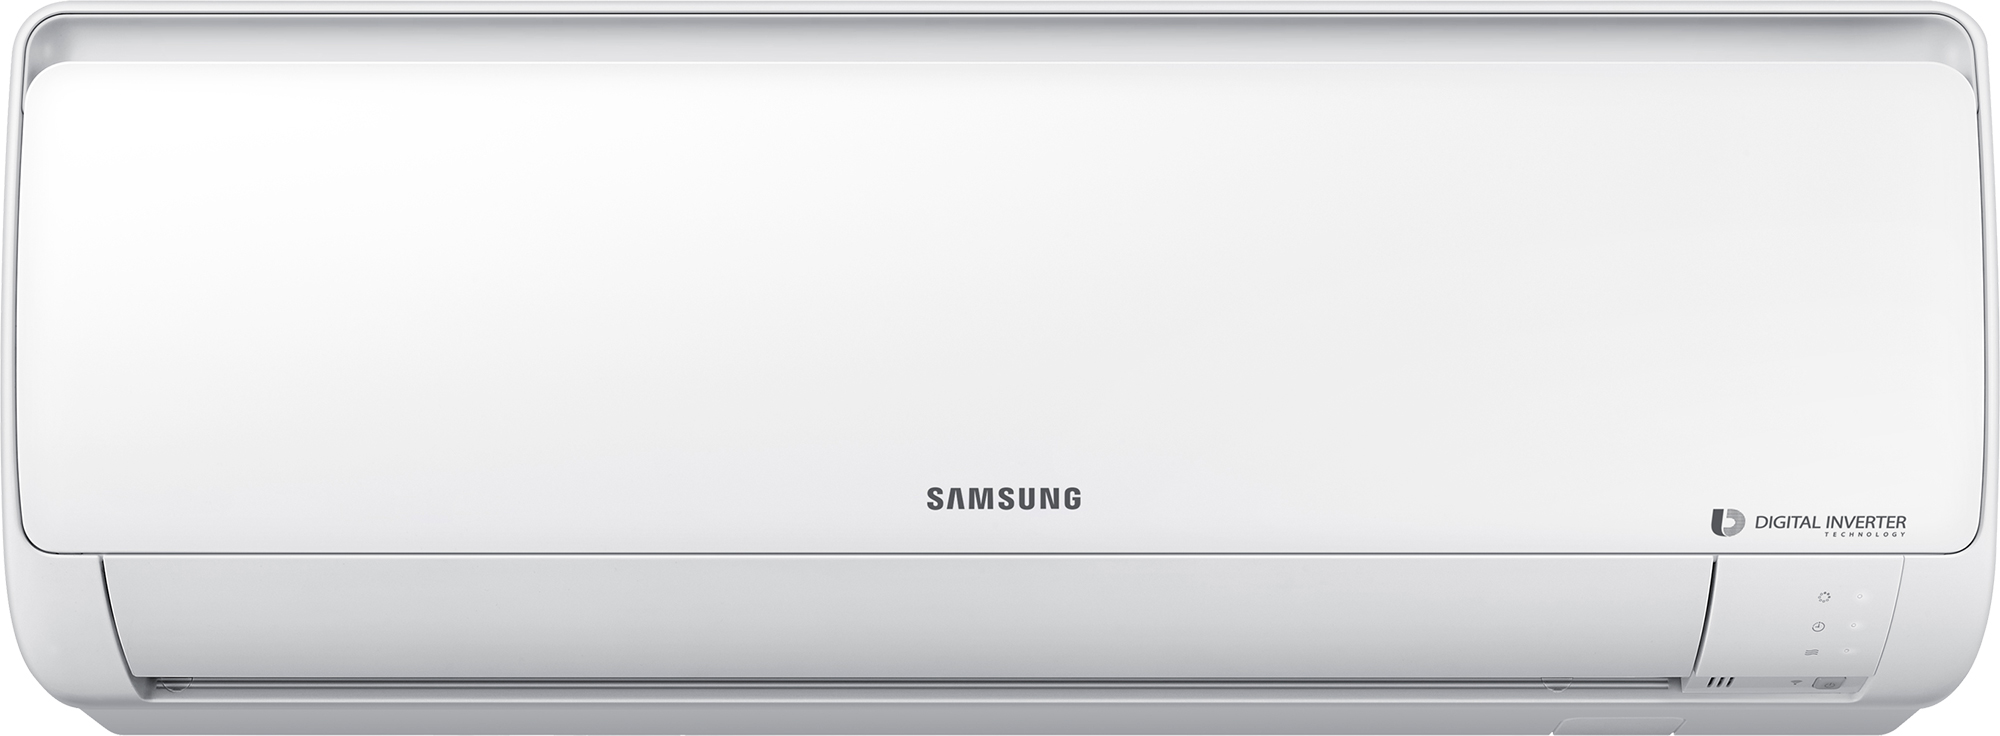 Кондиционер Samsung с обогревом Samsung AR18RSFPAWQNER / AR18RSFPAWQXER